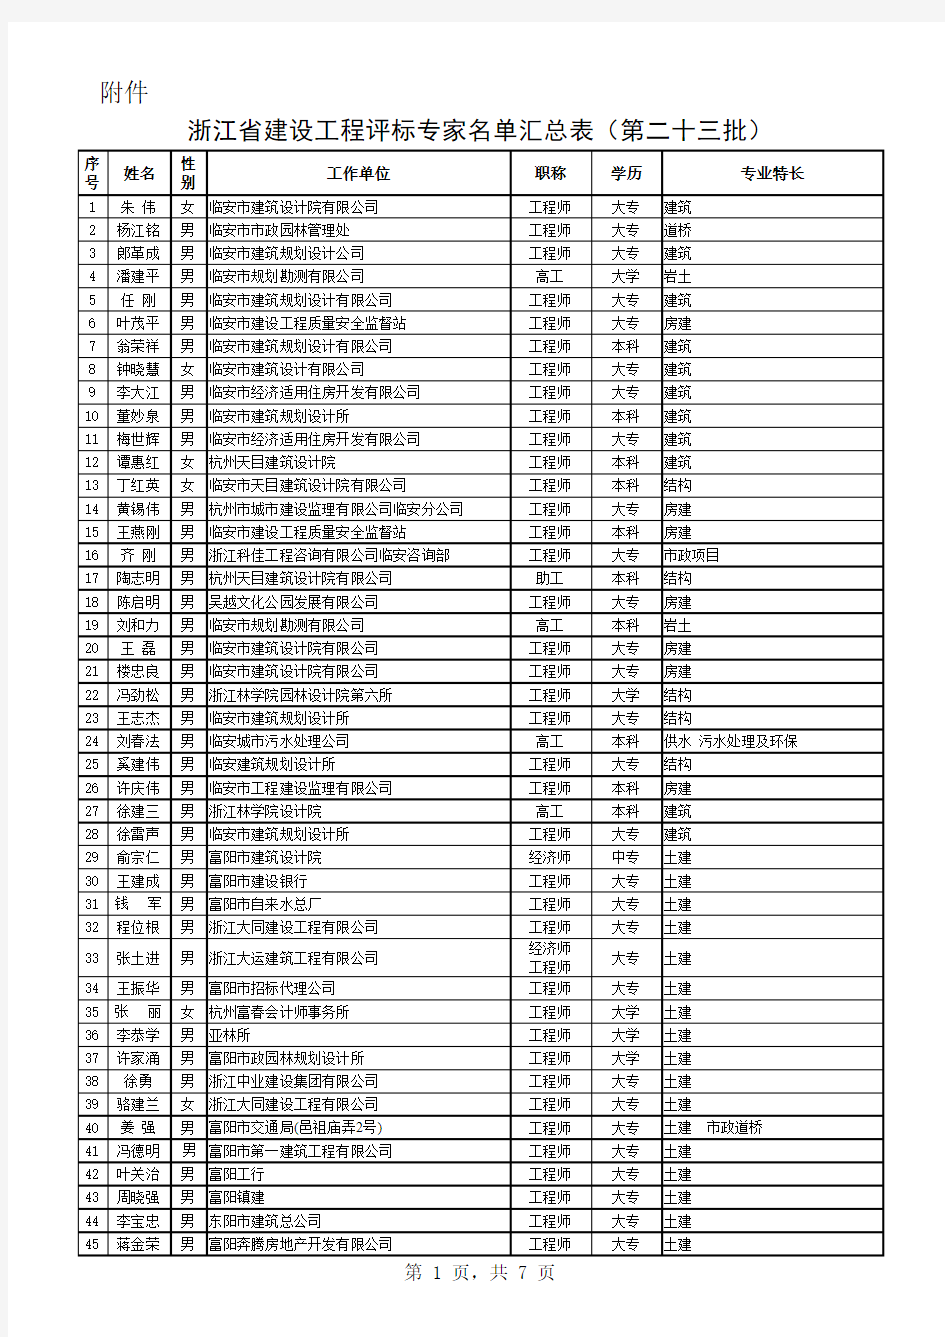 浙江省建设工程评标专家名单汇总表(第二十三批) 20130720